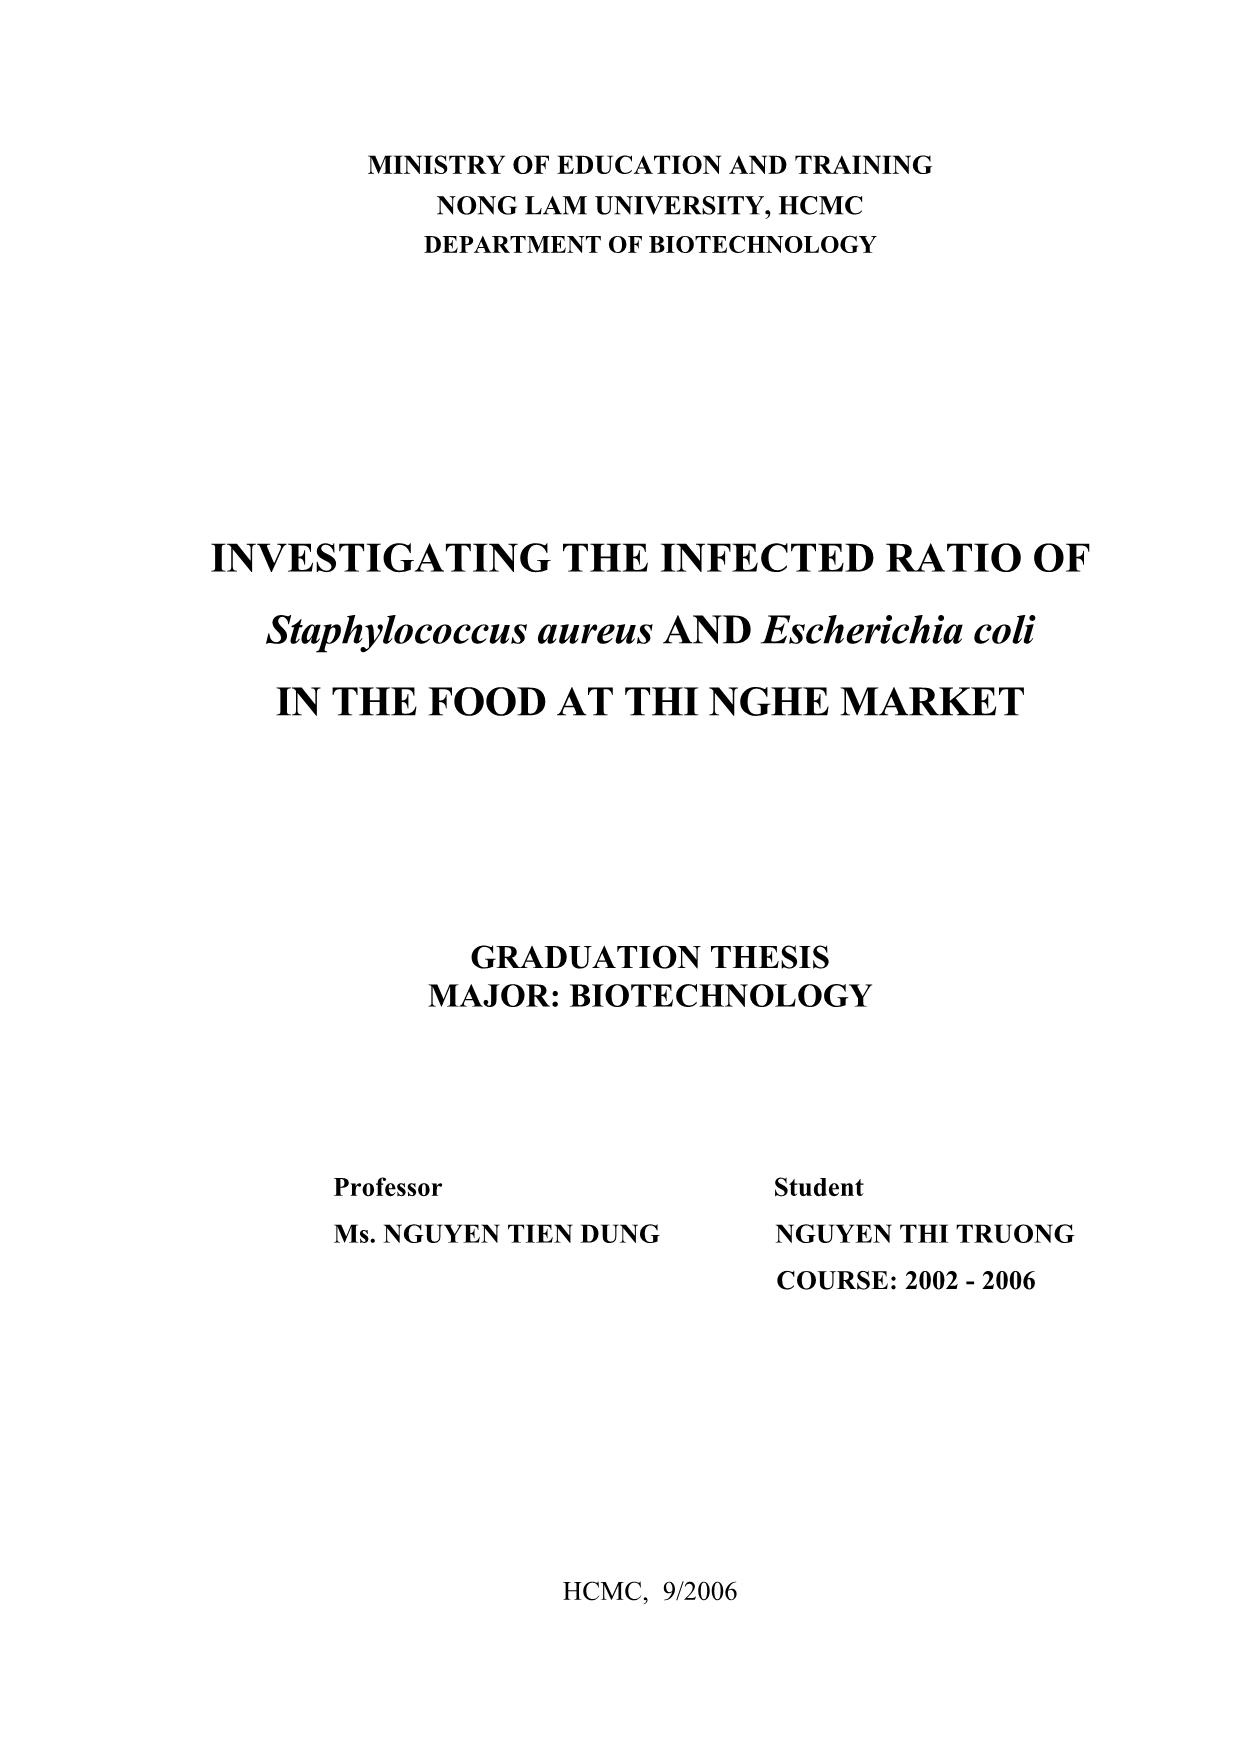 Luận văn Khảo sát tỉ lệ nhiễm staphylococcus aureus và escherichia coli trong thực phẩm tại khu vực chợ Thị Nghè trang 3